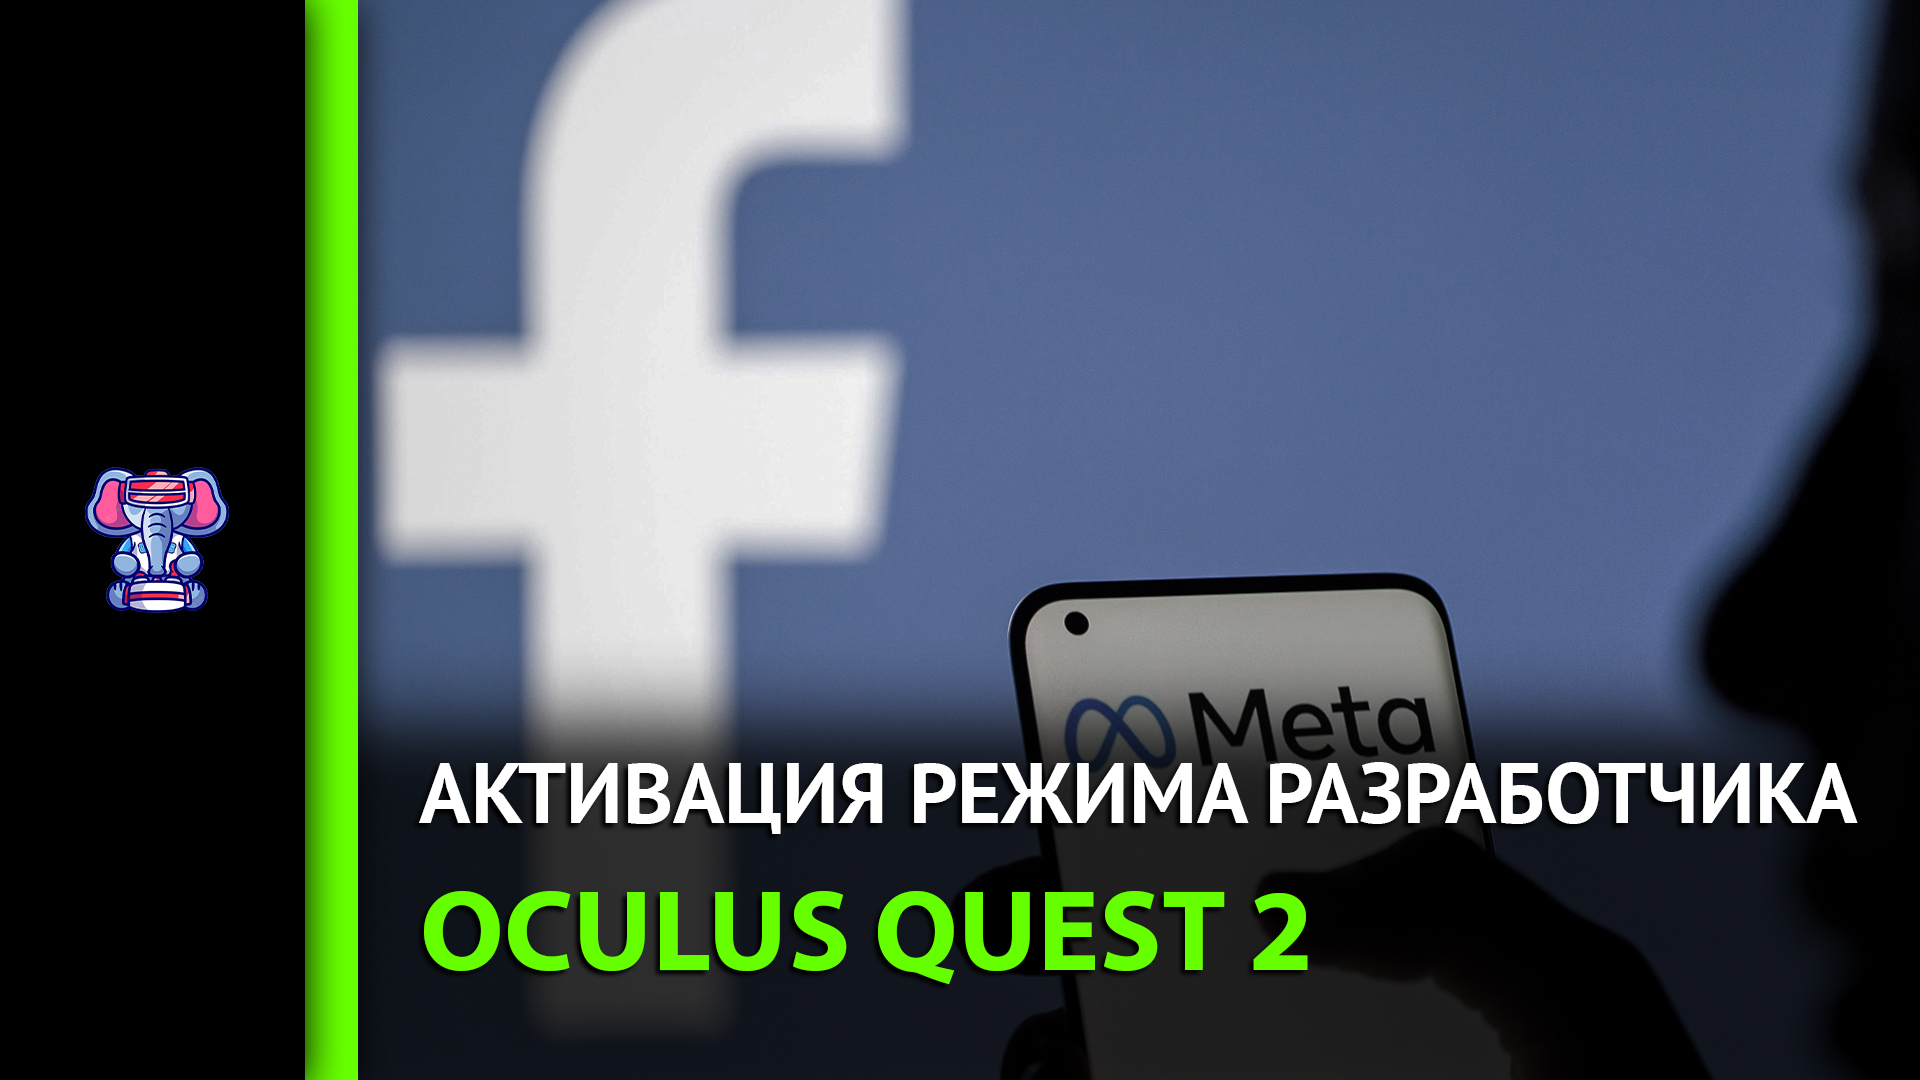 Oculus quest 2 включить режим разработчика. Активация Oculus Quest 2. Окно режим разработчика Окулус.